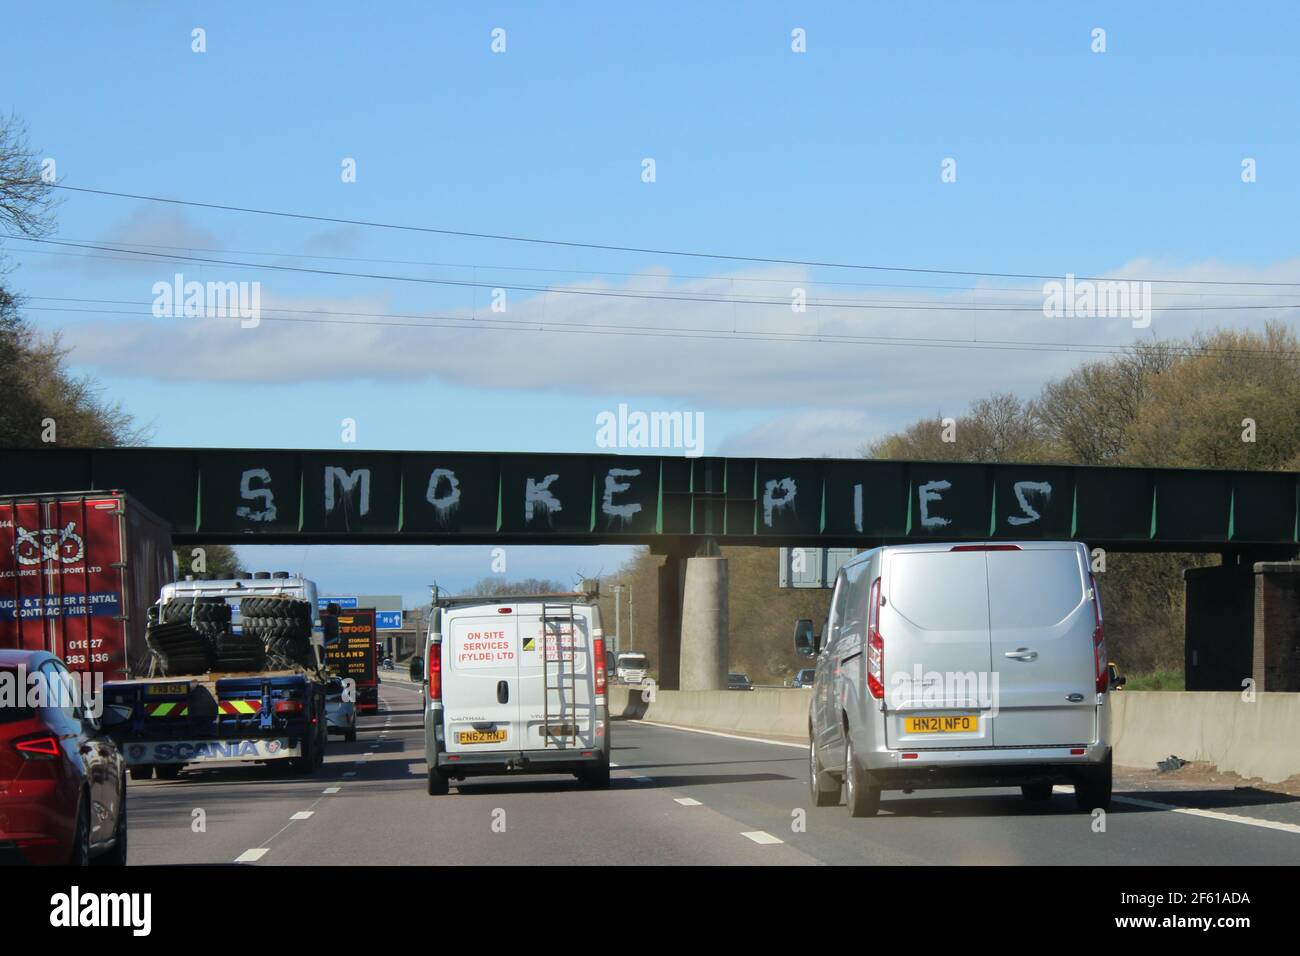 Des tourtes de fumée peintes en blanc sur le pont entre la jonction 18 et 19 de l'autoroute M6 en référence à la bande de Liverpool. Concept de graffiti de pont Banque D'Images